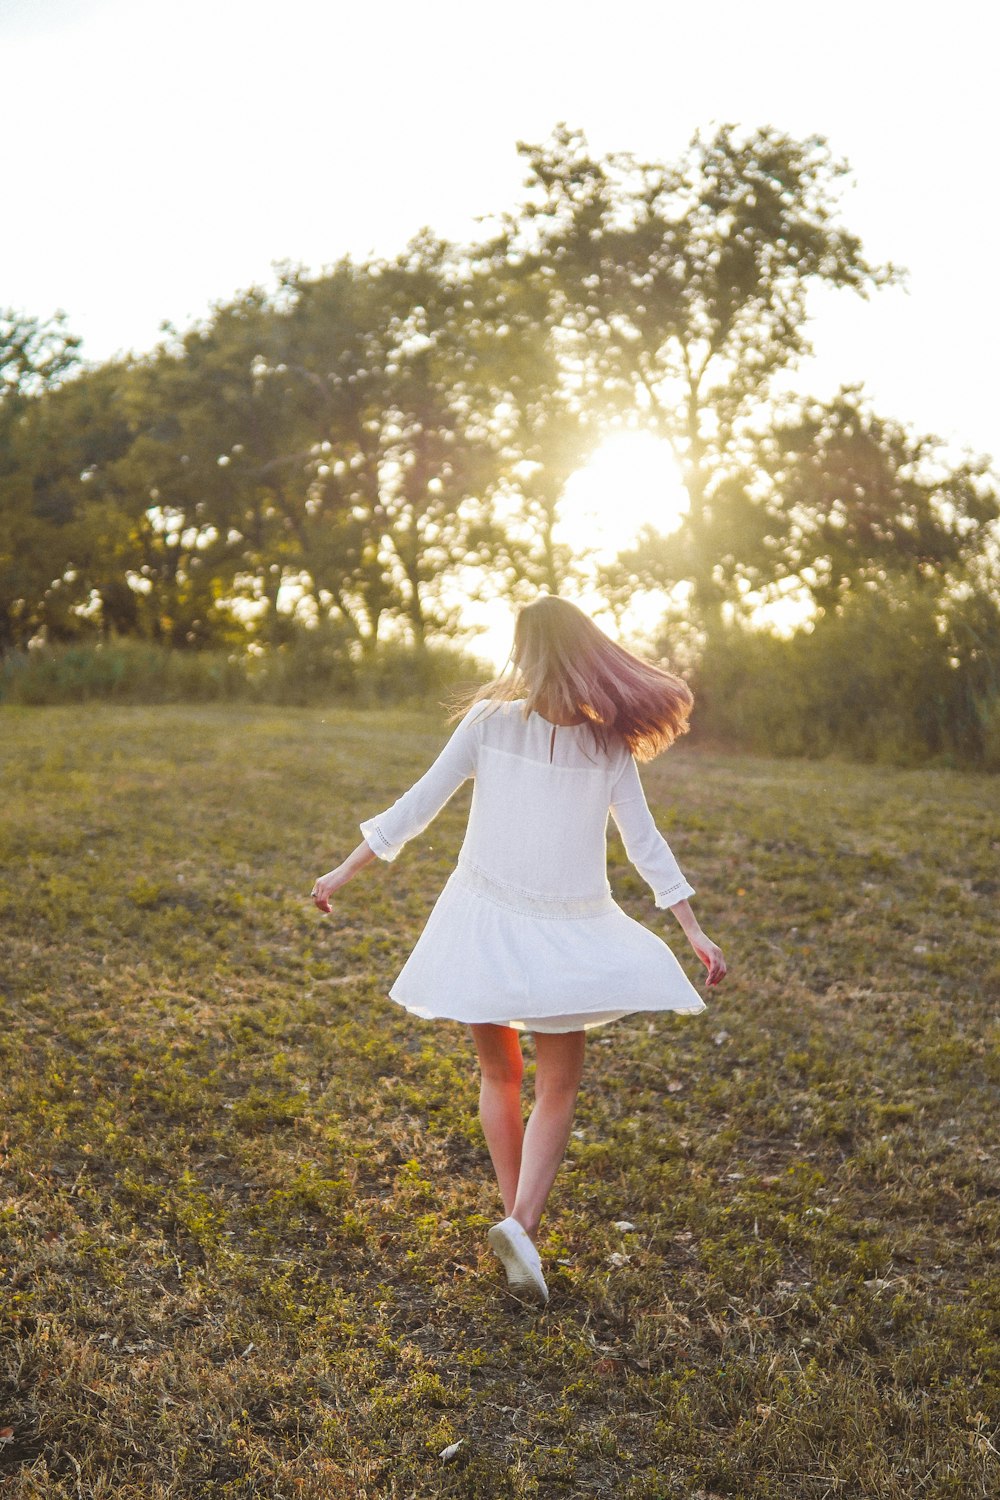 Muchacha en vestido blanco de manga larga corriendo en el campo de hierba verde durante el día